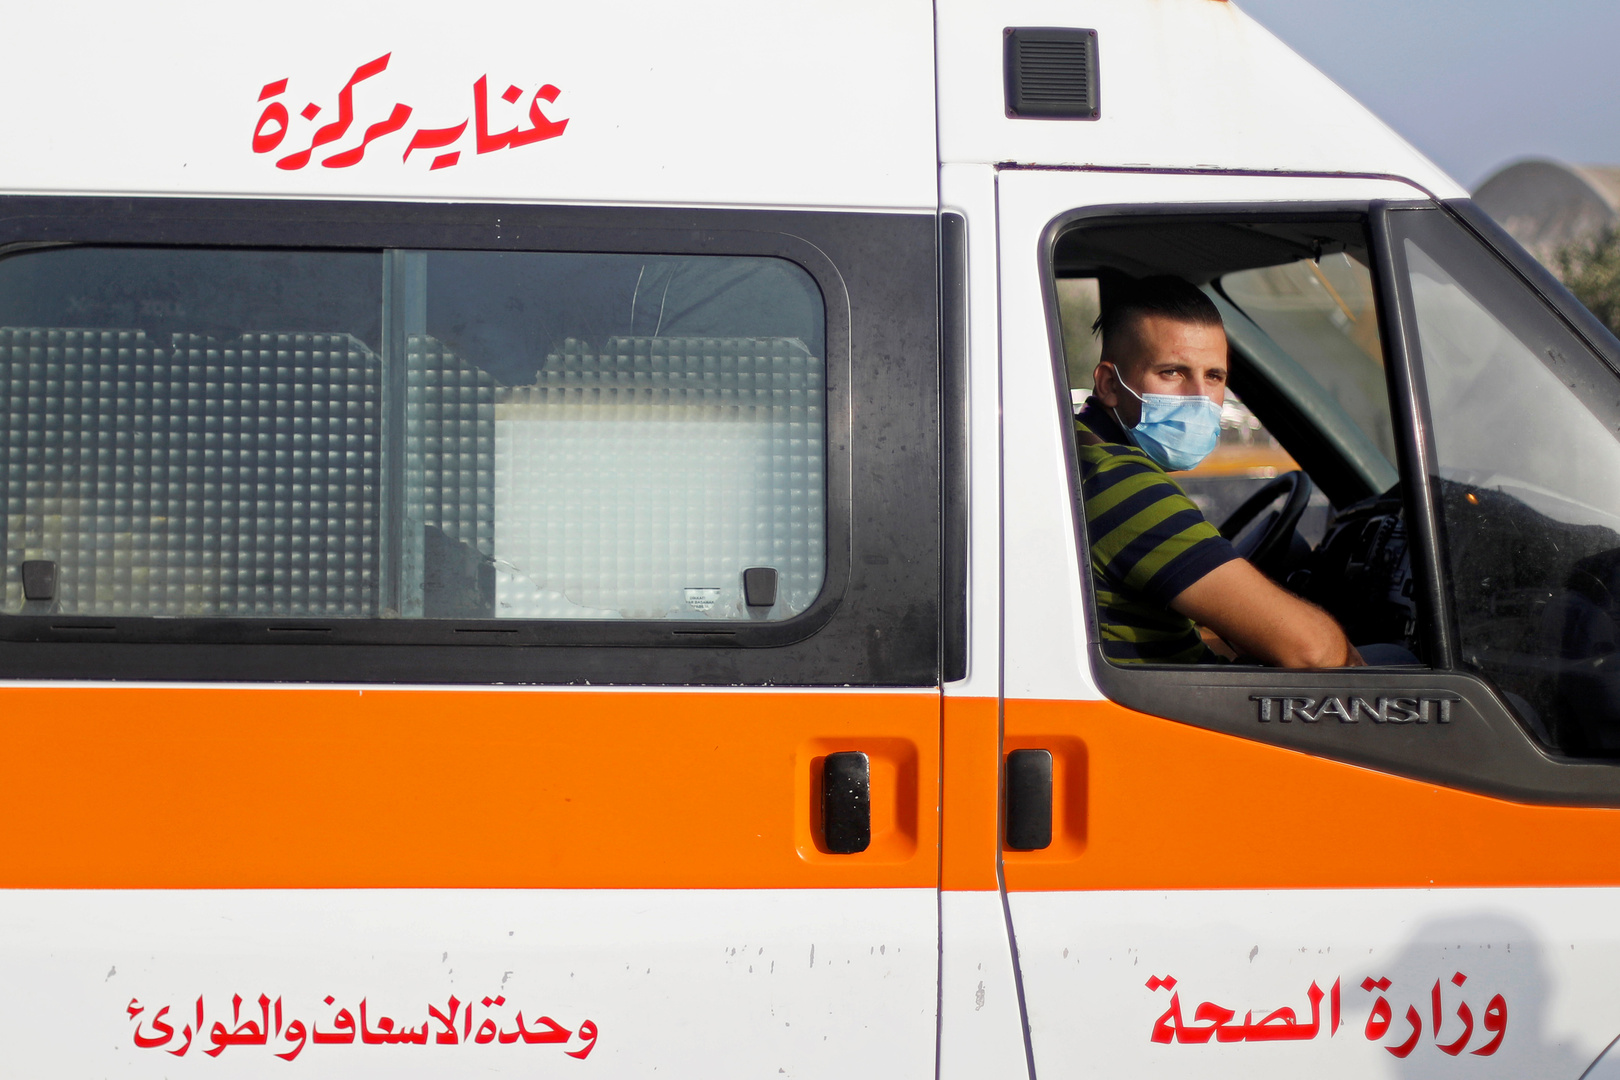 وفد فلسطيني من غزة يزور الجرحى والمصابين الفلسطينيين بمستشفى العريش العام في مصر